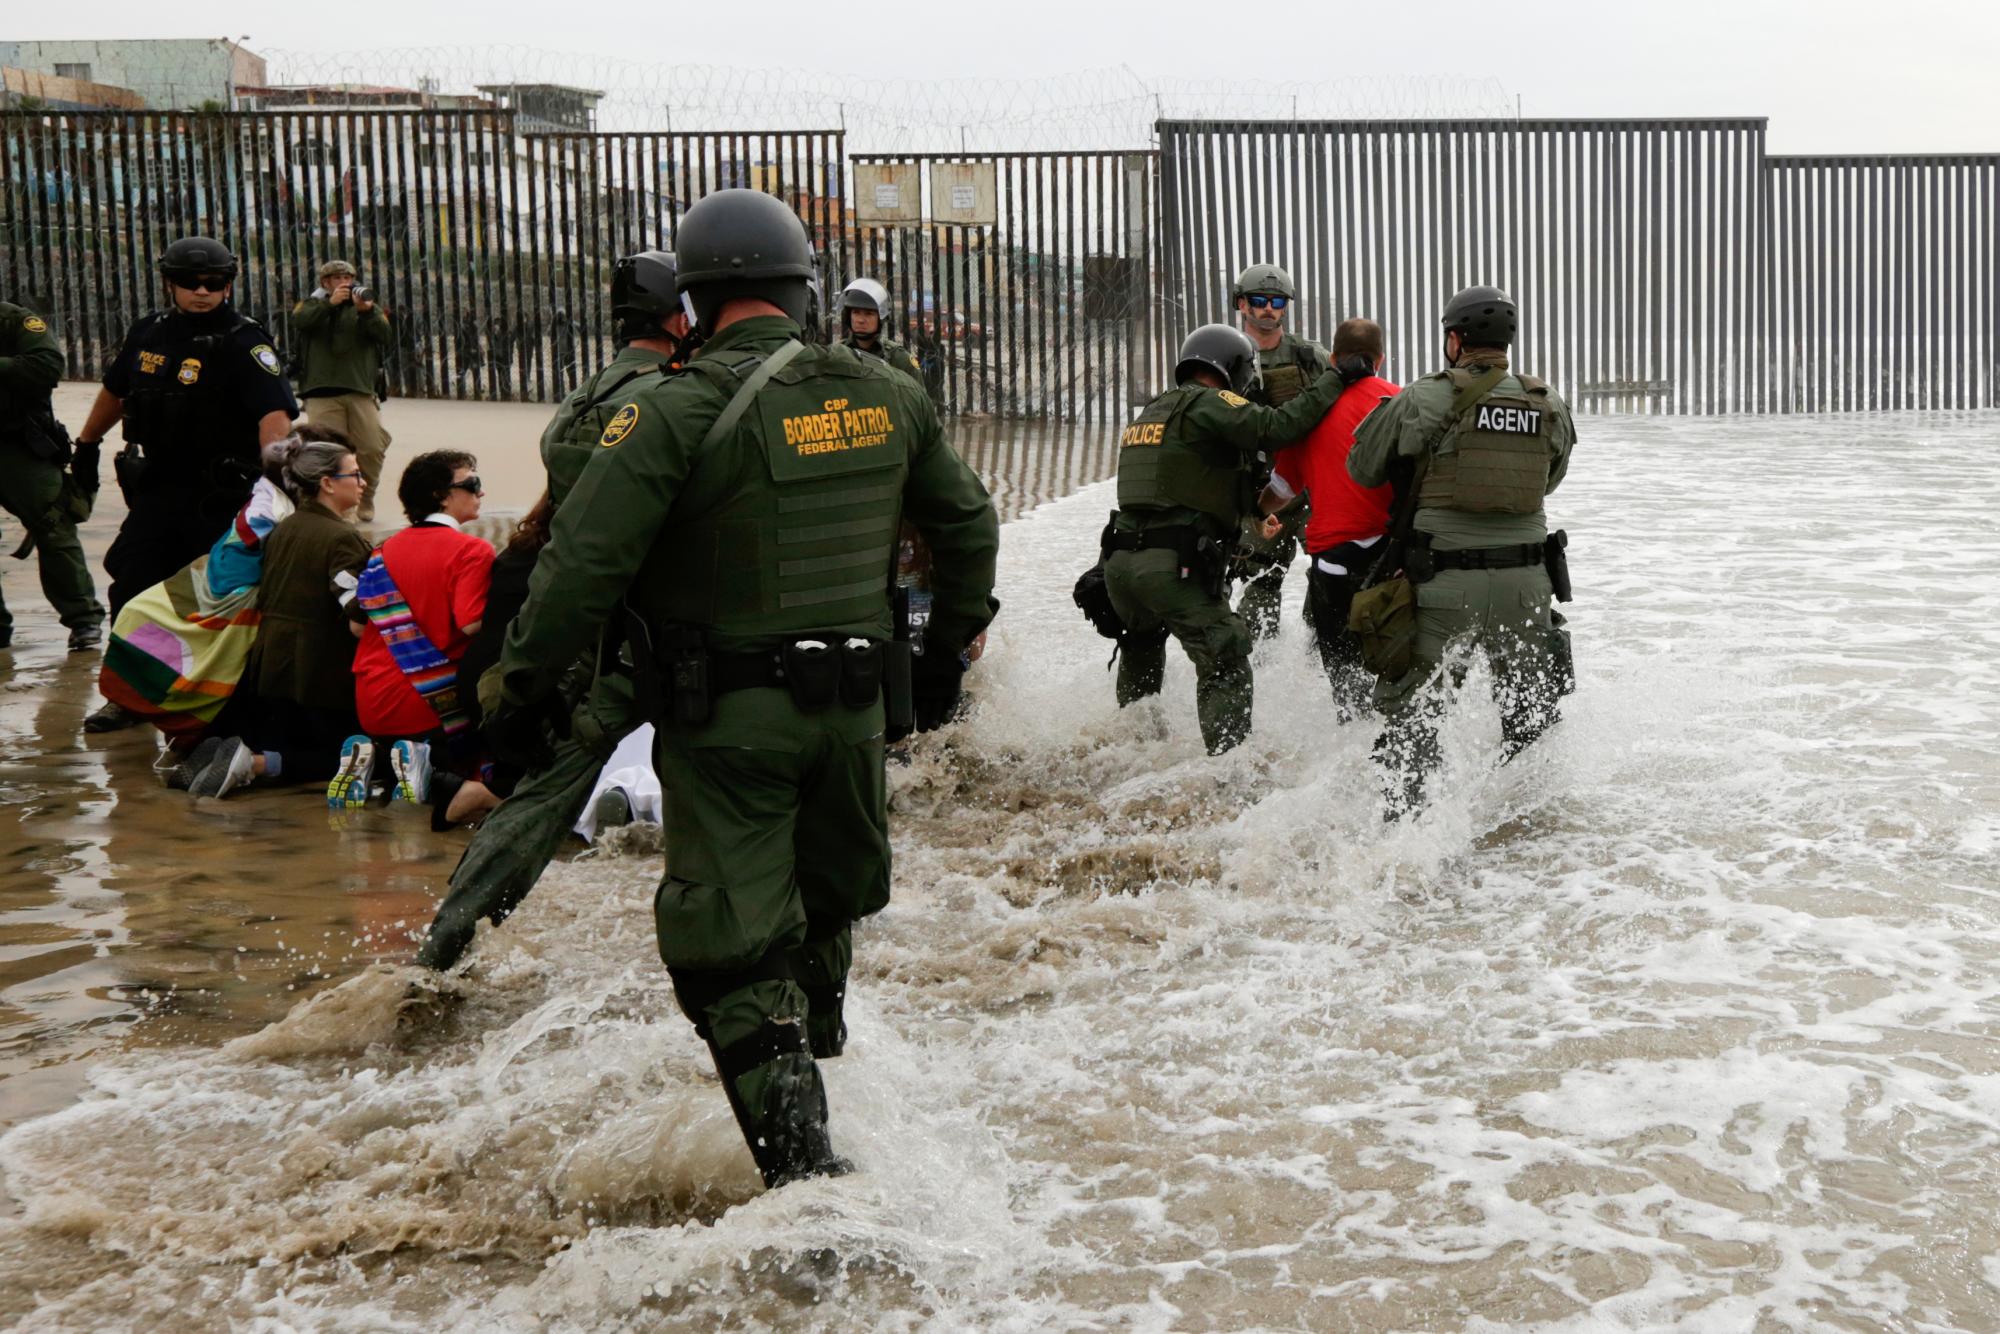 Agentes de la Patrulla Fronteriza, derecha, detienen a un hombre durante una protesta en la frontera con Tijuana, México, en San Diego. 